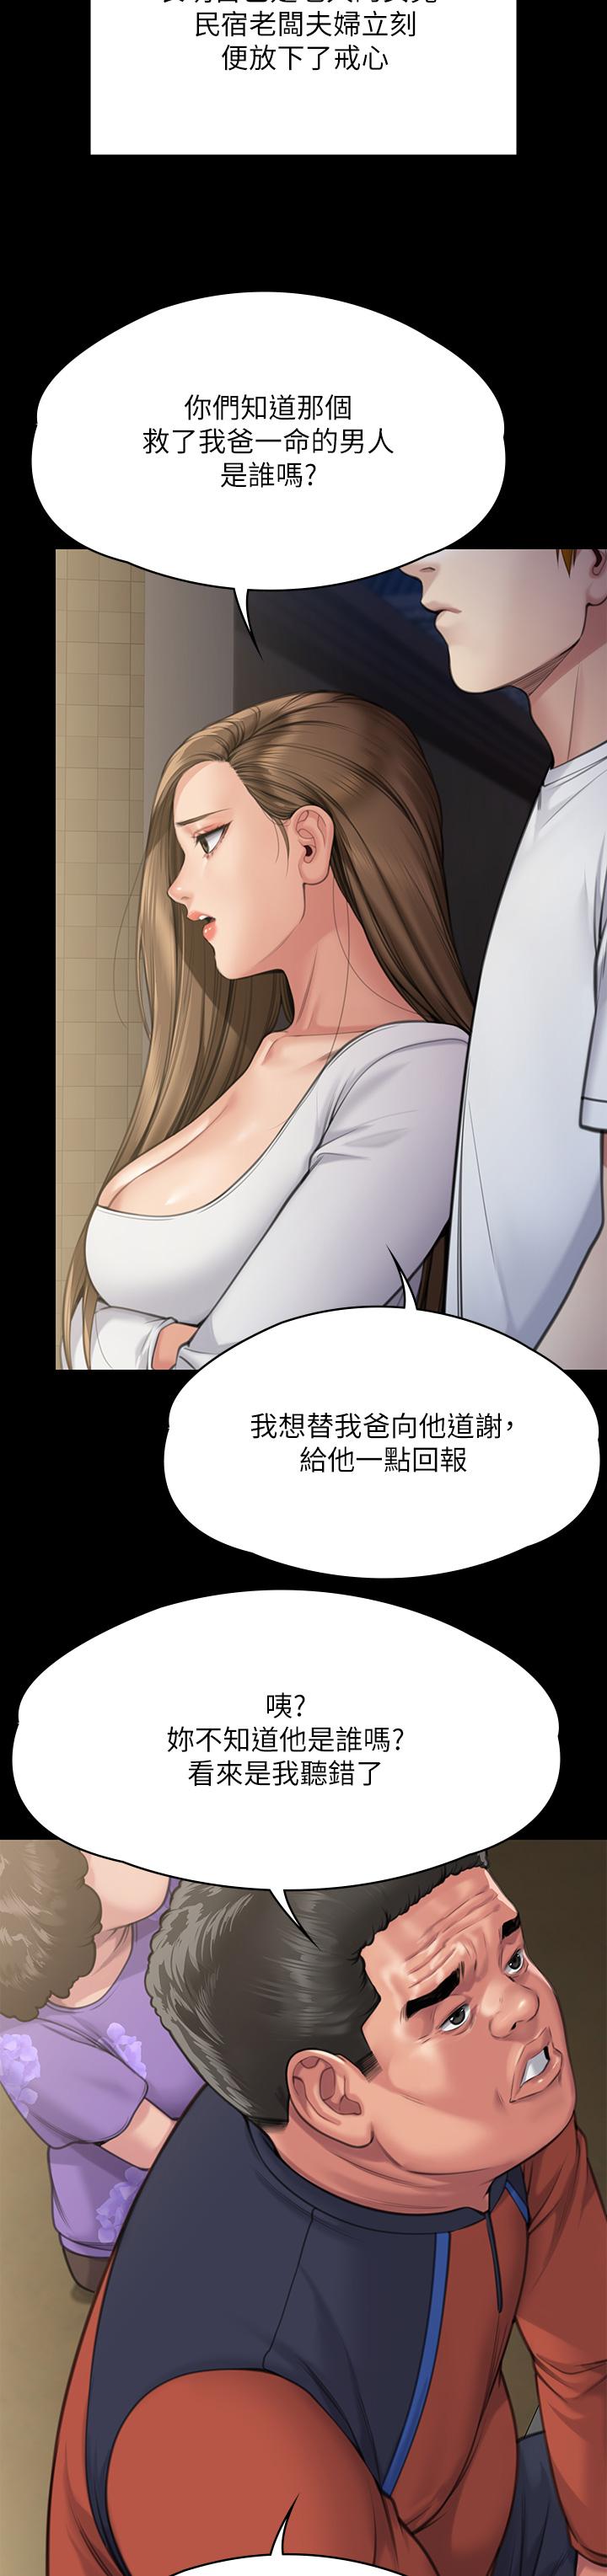 韩国污漫画 傀儡 第281话-被老人轮奸的淫荡妇 28